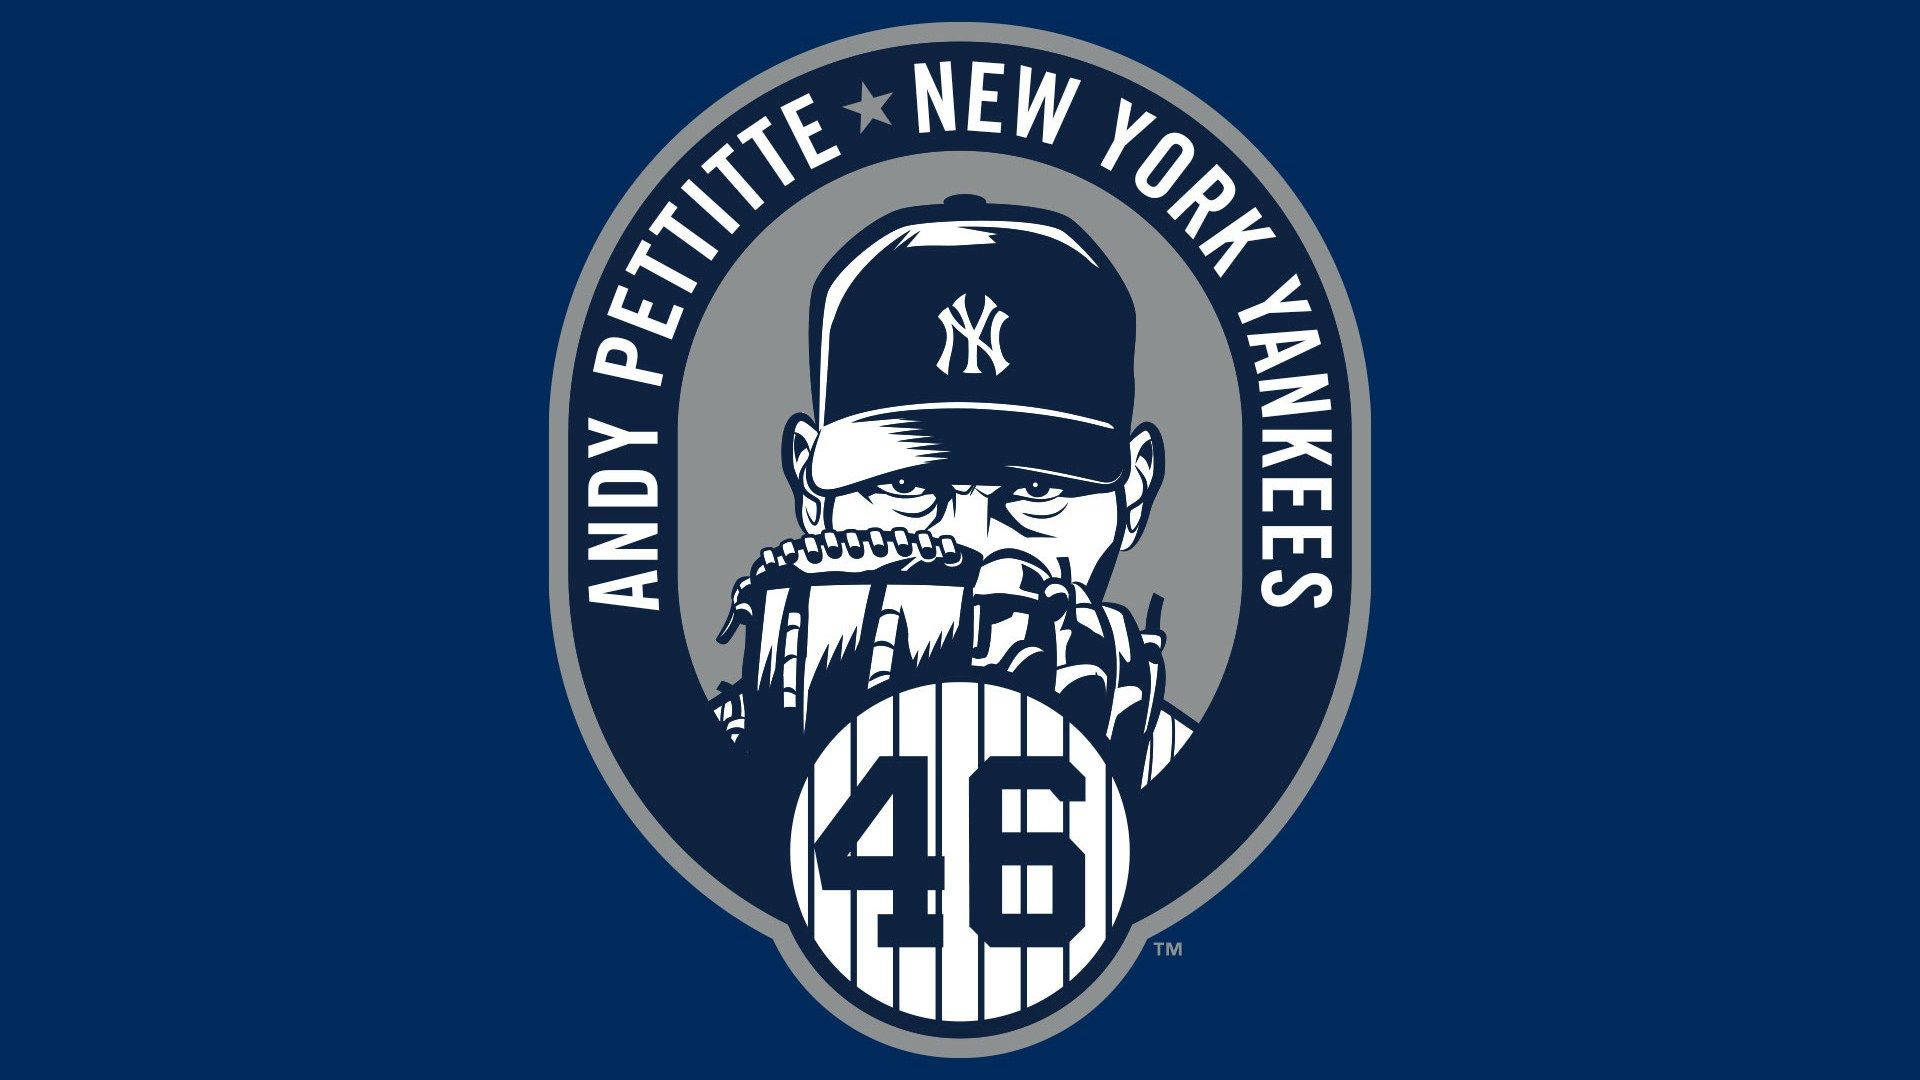 Download New York Yankees Andy Pettitte Logo Wallpaper